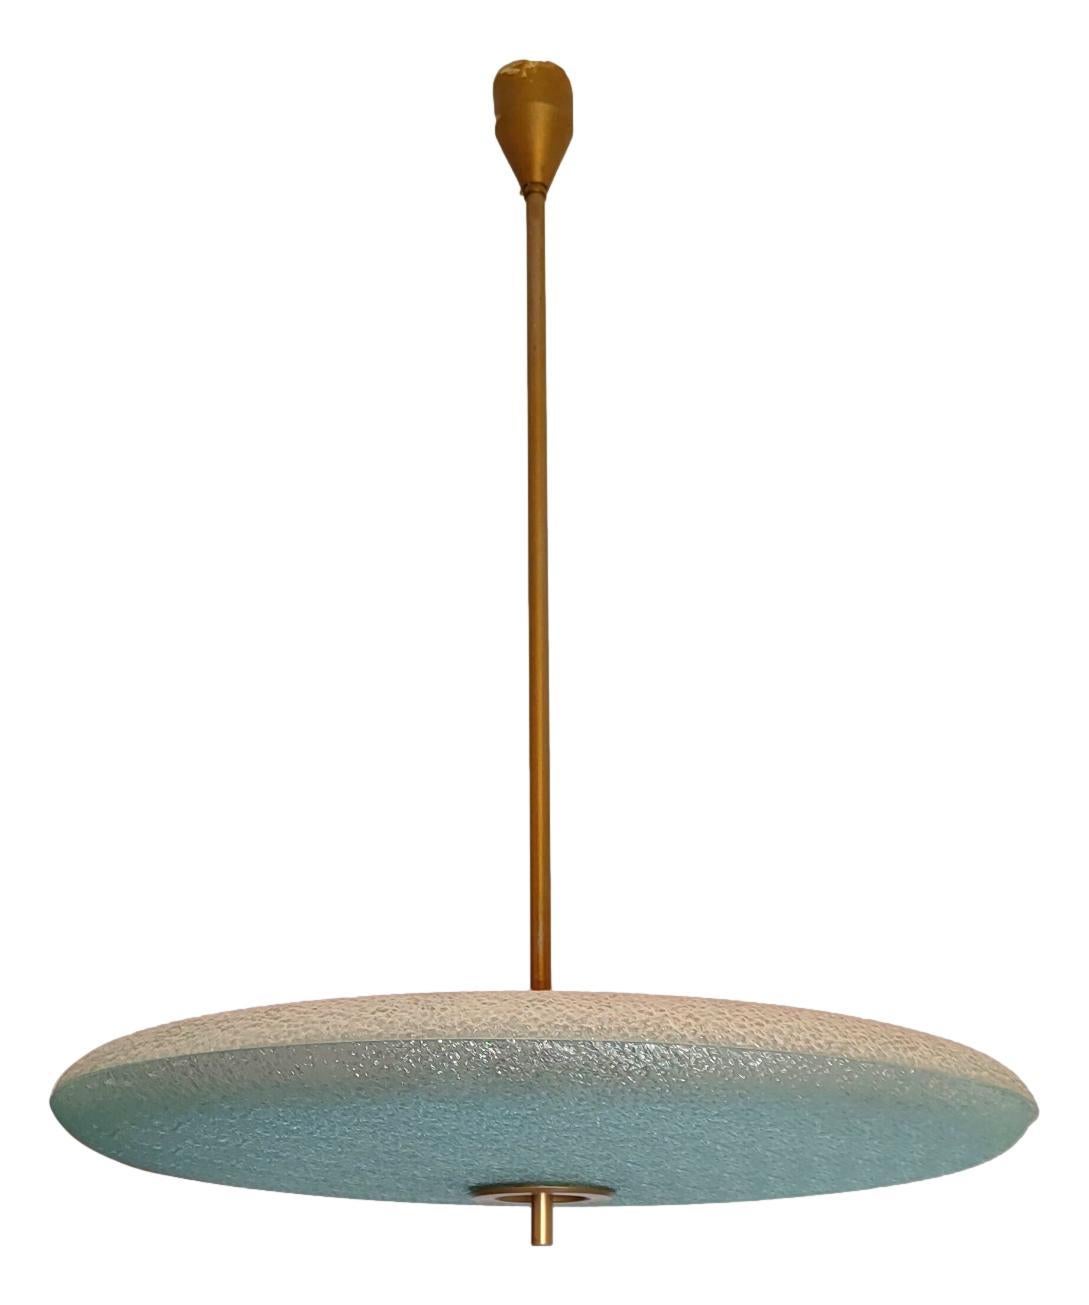 raro lampadario originale produzione Fontana Arte su disegno di Max Ingrand, 1950 circa

struttura in metallo con elementi in ottone, coppia di larghi dischi in vetro di murano martellato e finemente lavorato

dotato di 6 portalampada

misura